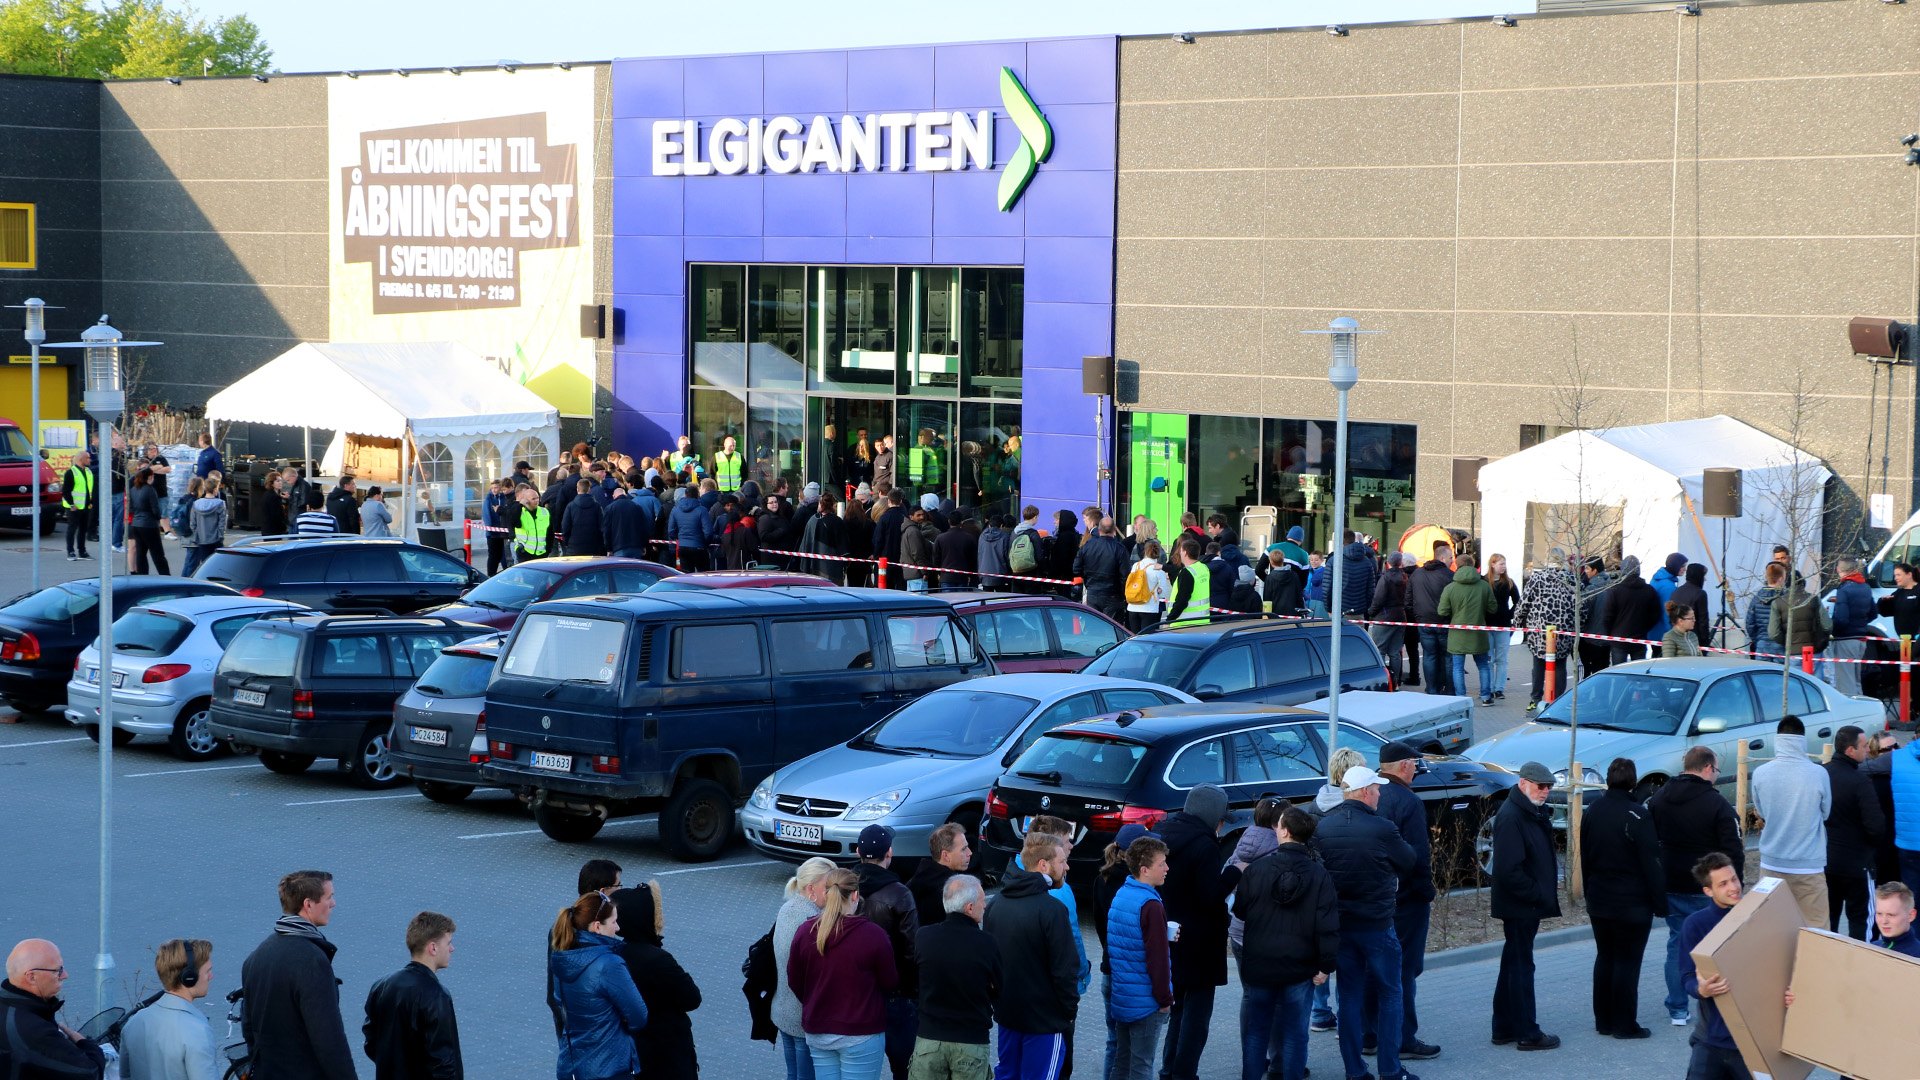 Åbningsdag af Elgiganten i Svendborg